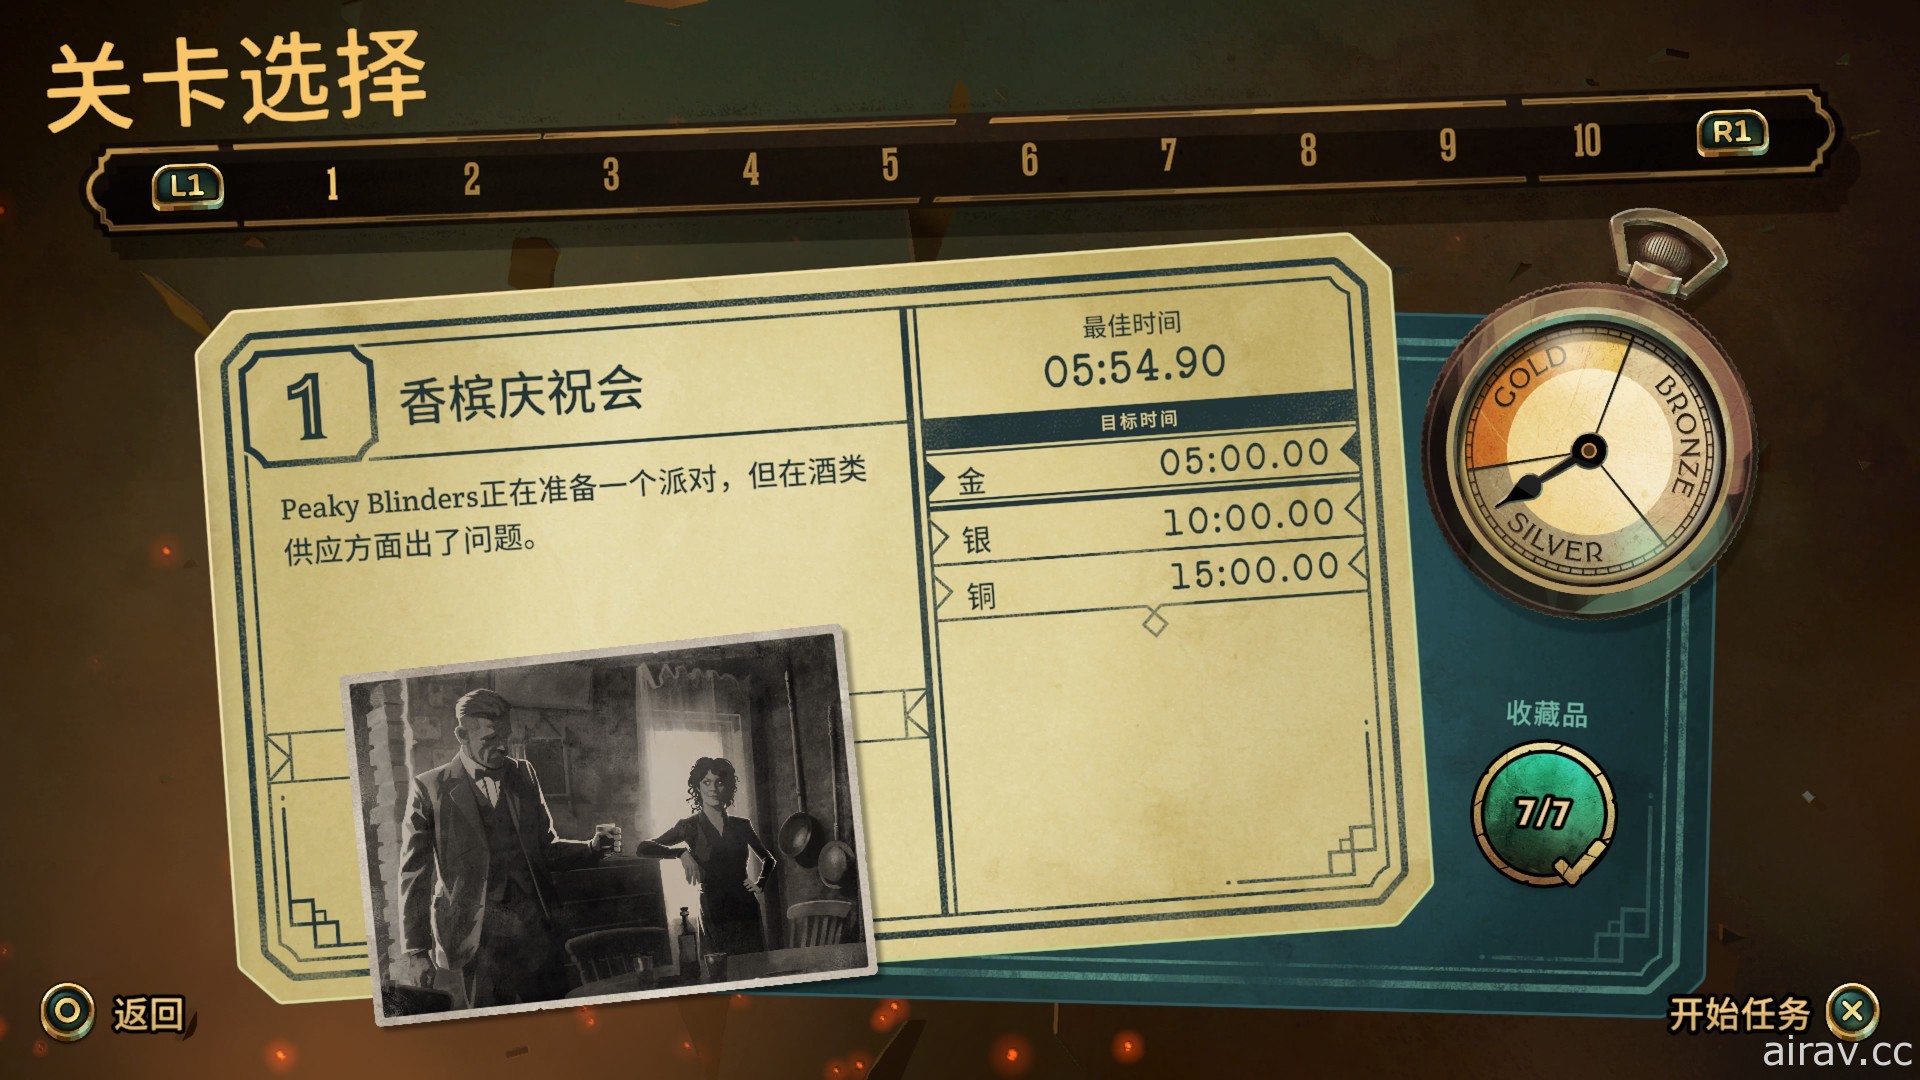 改編自 BBC 與 Netflix 電視劇《浴血黑幫：傀儡師》PS4 中文數位版 8 月 21 日上市